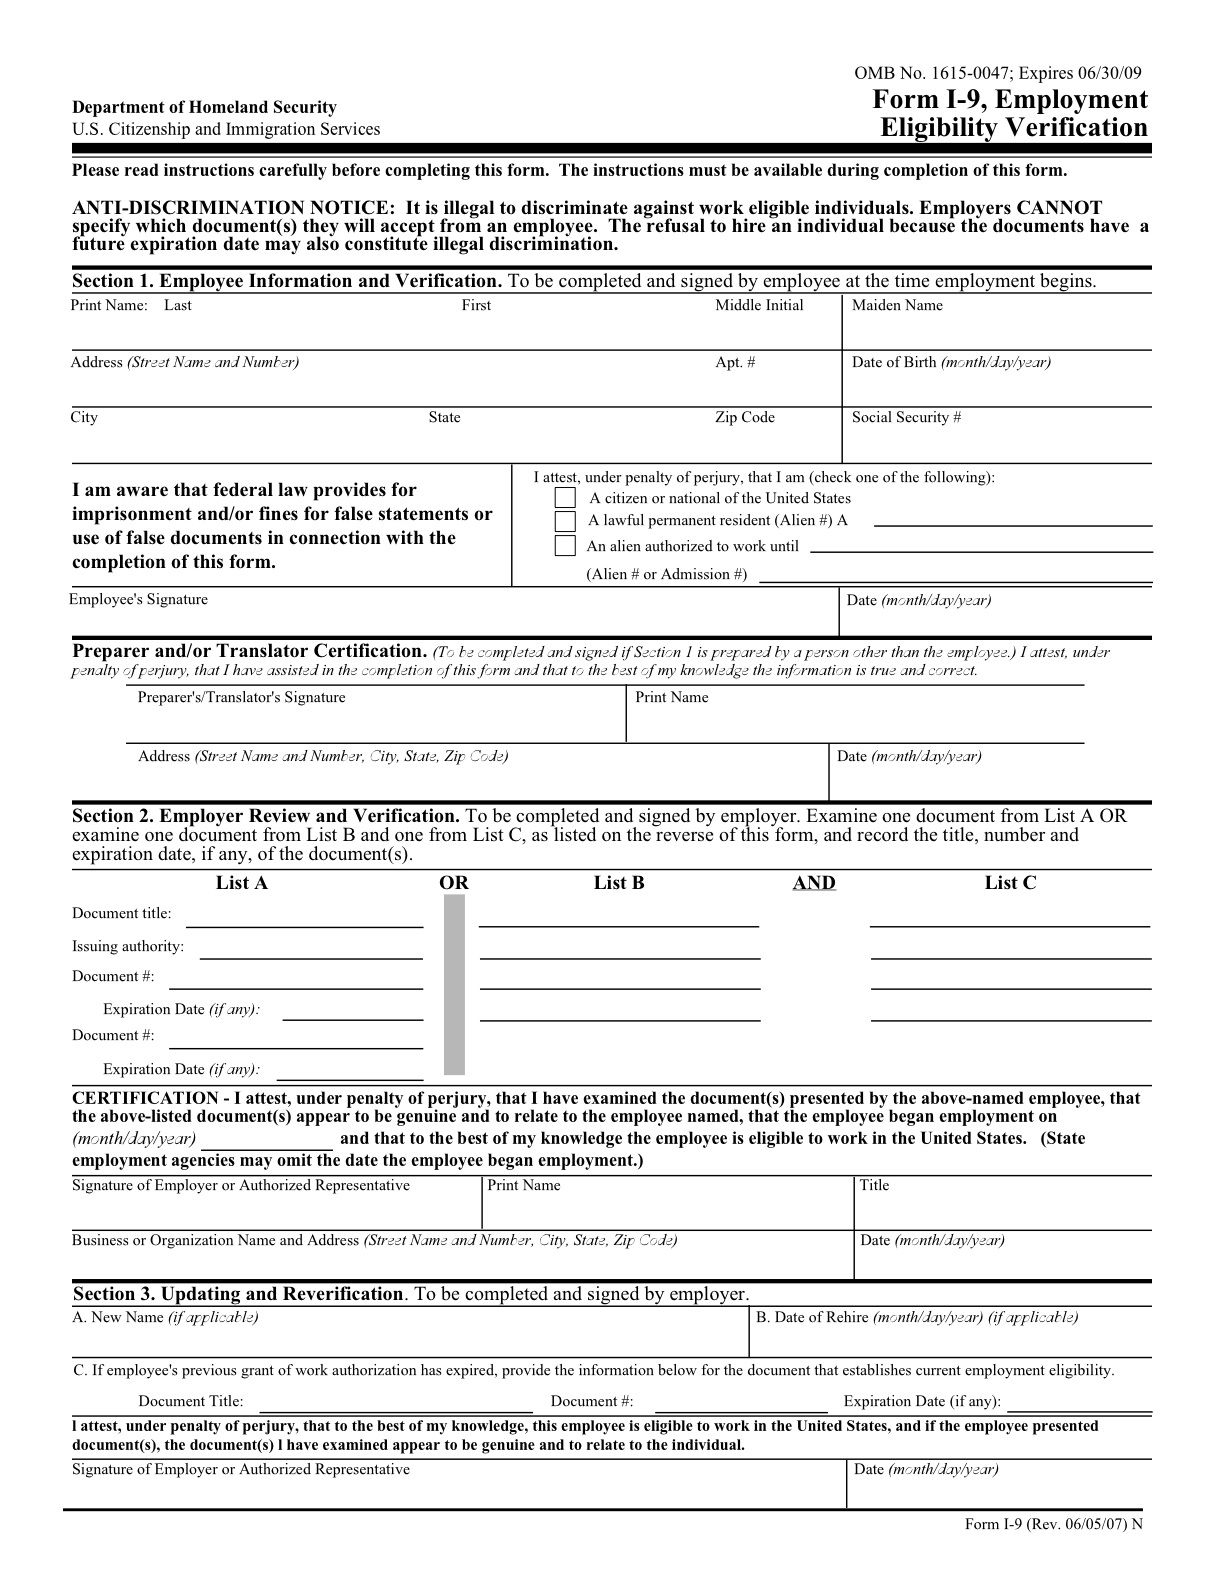 I-9 Form 2013 Printable | Category: Government Filename: I-9